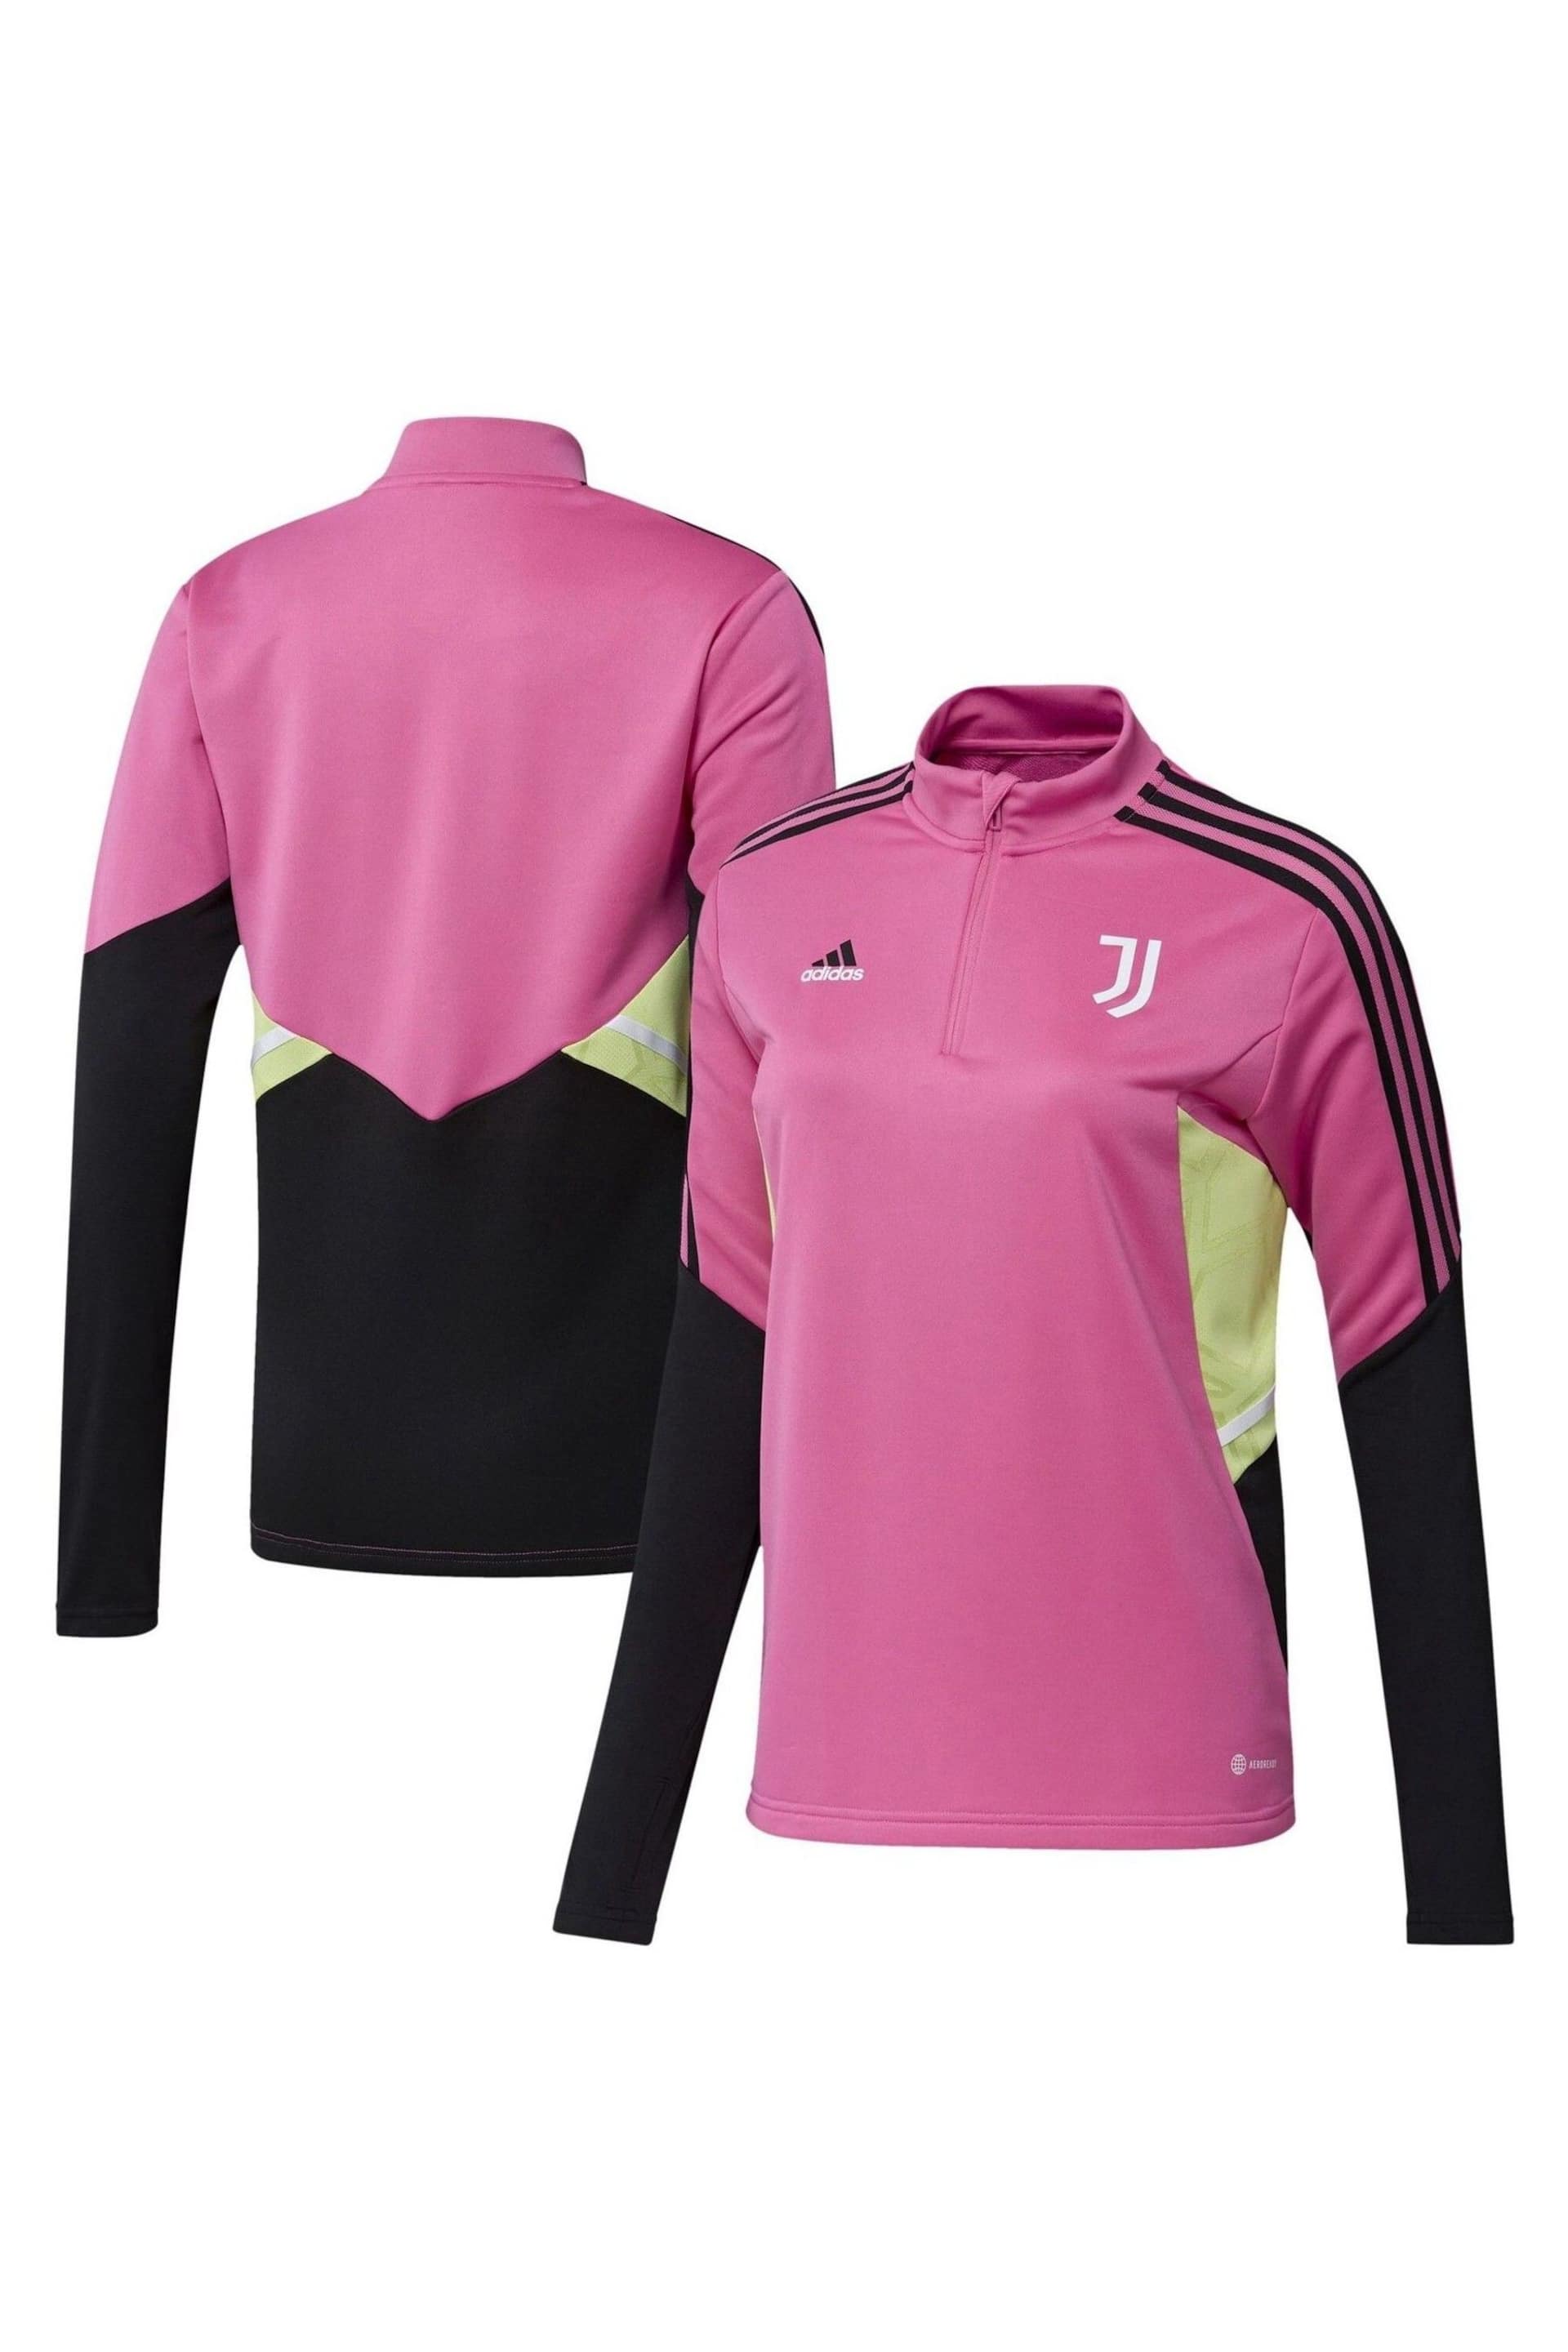 adidas Pink Juventus Training Top Womens - Image 1 of 3